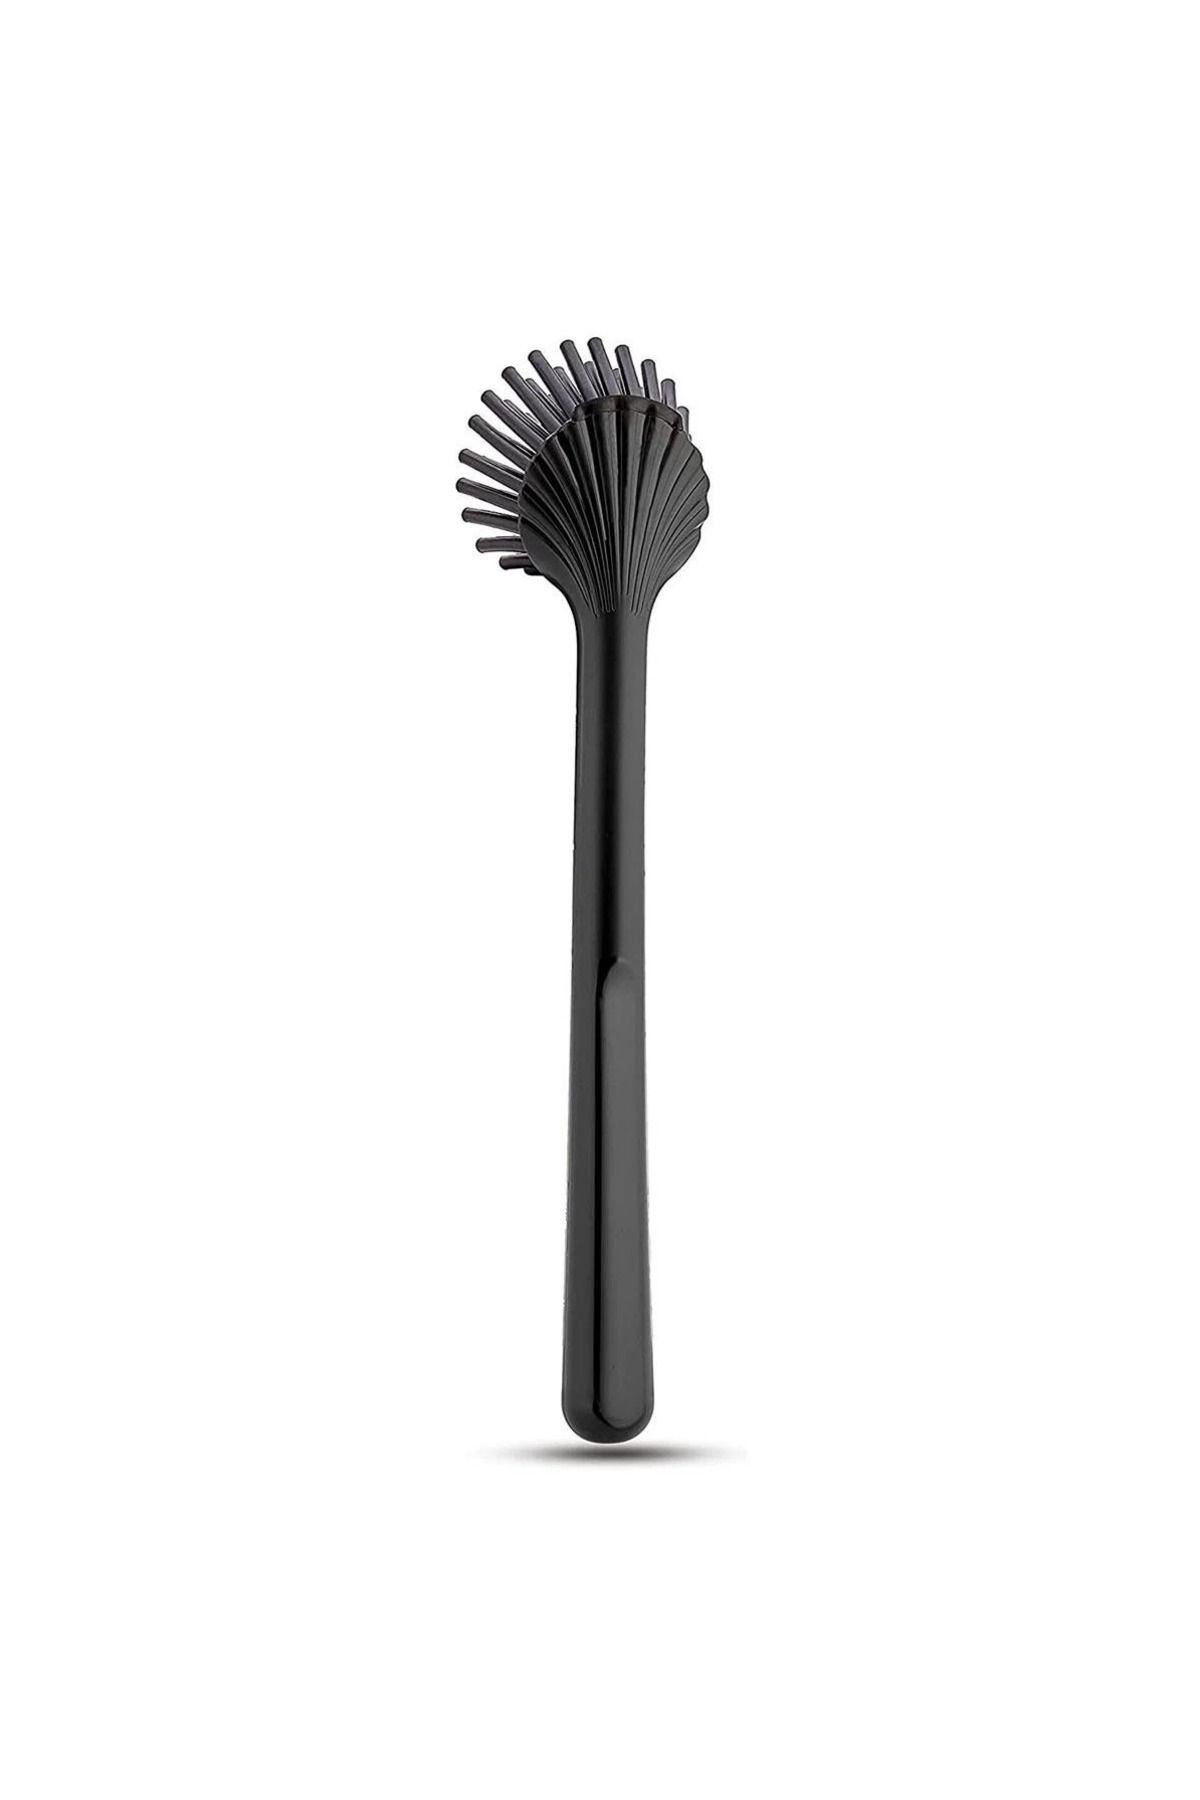 Gondol Silikon Çizmez Bulaşık Mutfak Tezgah Airfryer Fırçası - Siyah